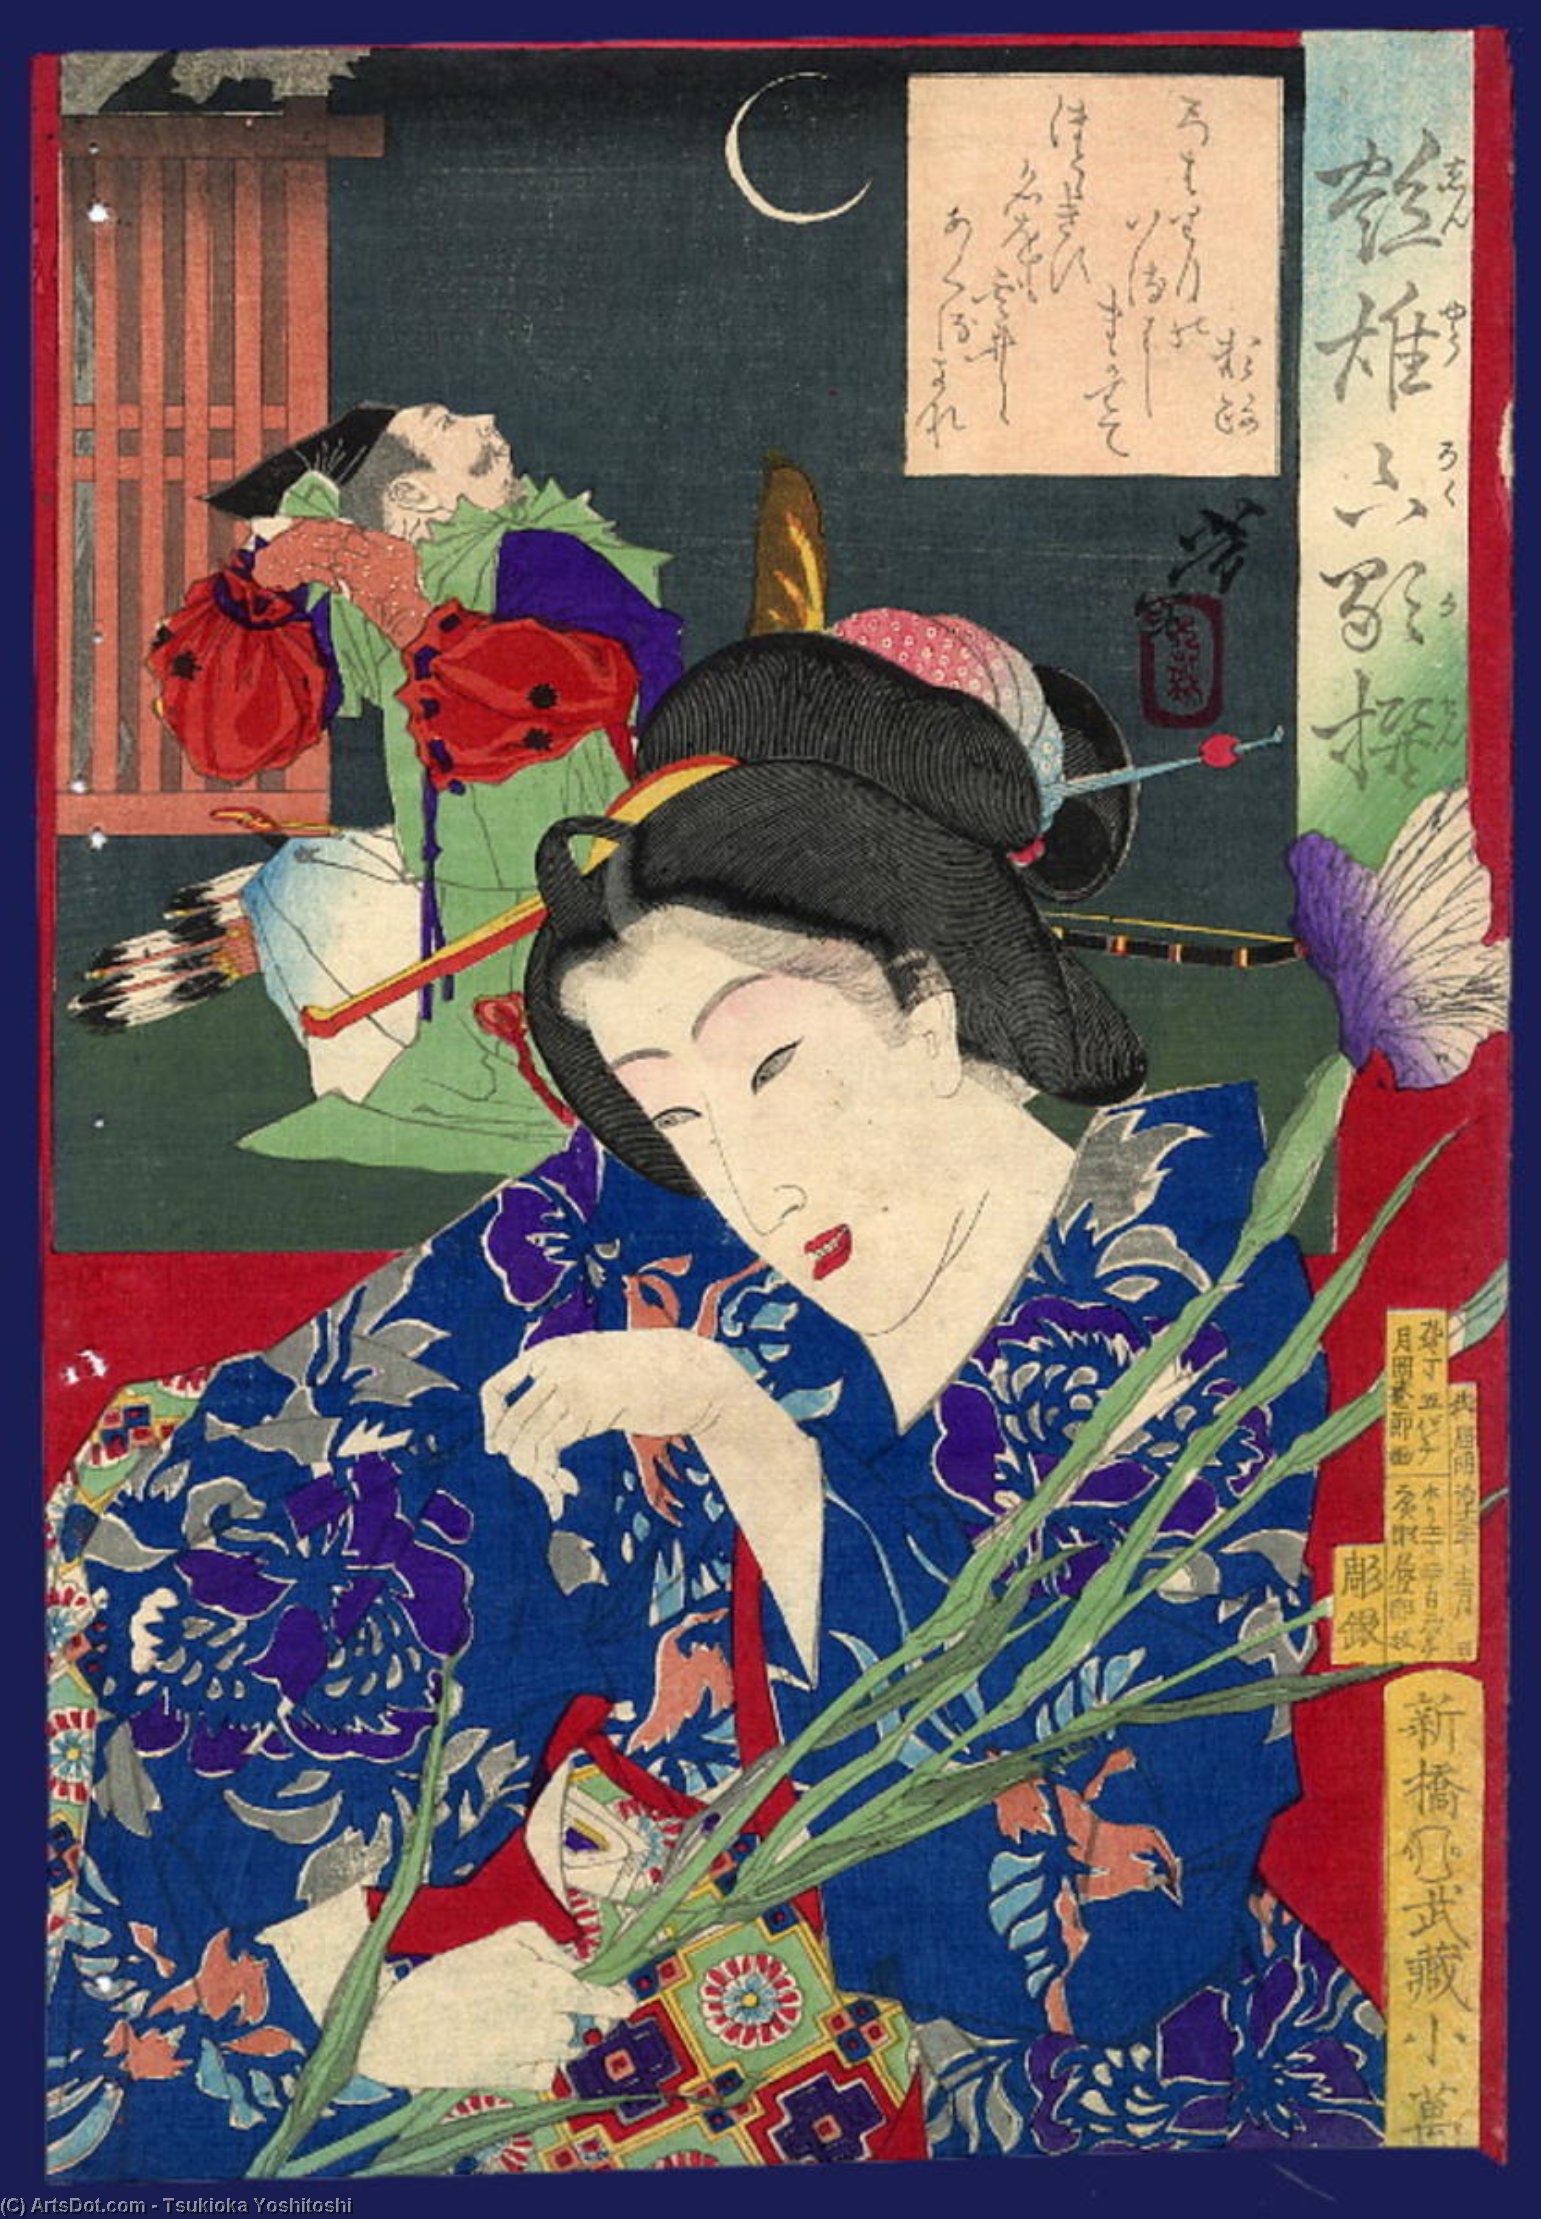 WikiOO.org - Encyclopedia of Fine Arts - Maleri, Artwork Tsukioka Yoshitoshi - Woman With Iris